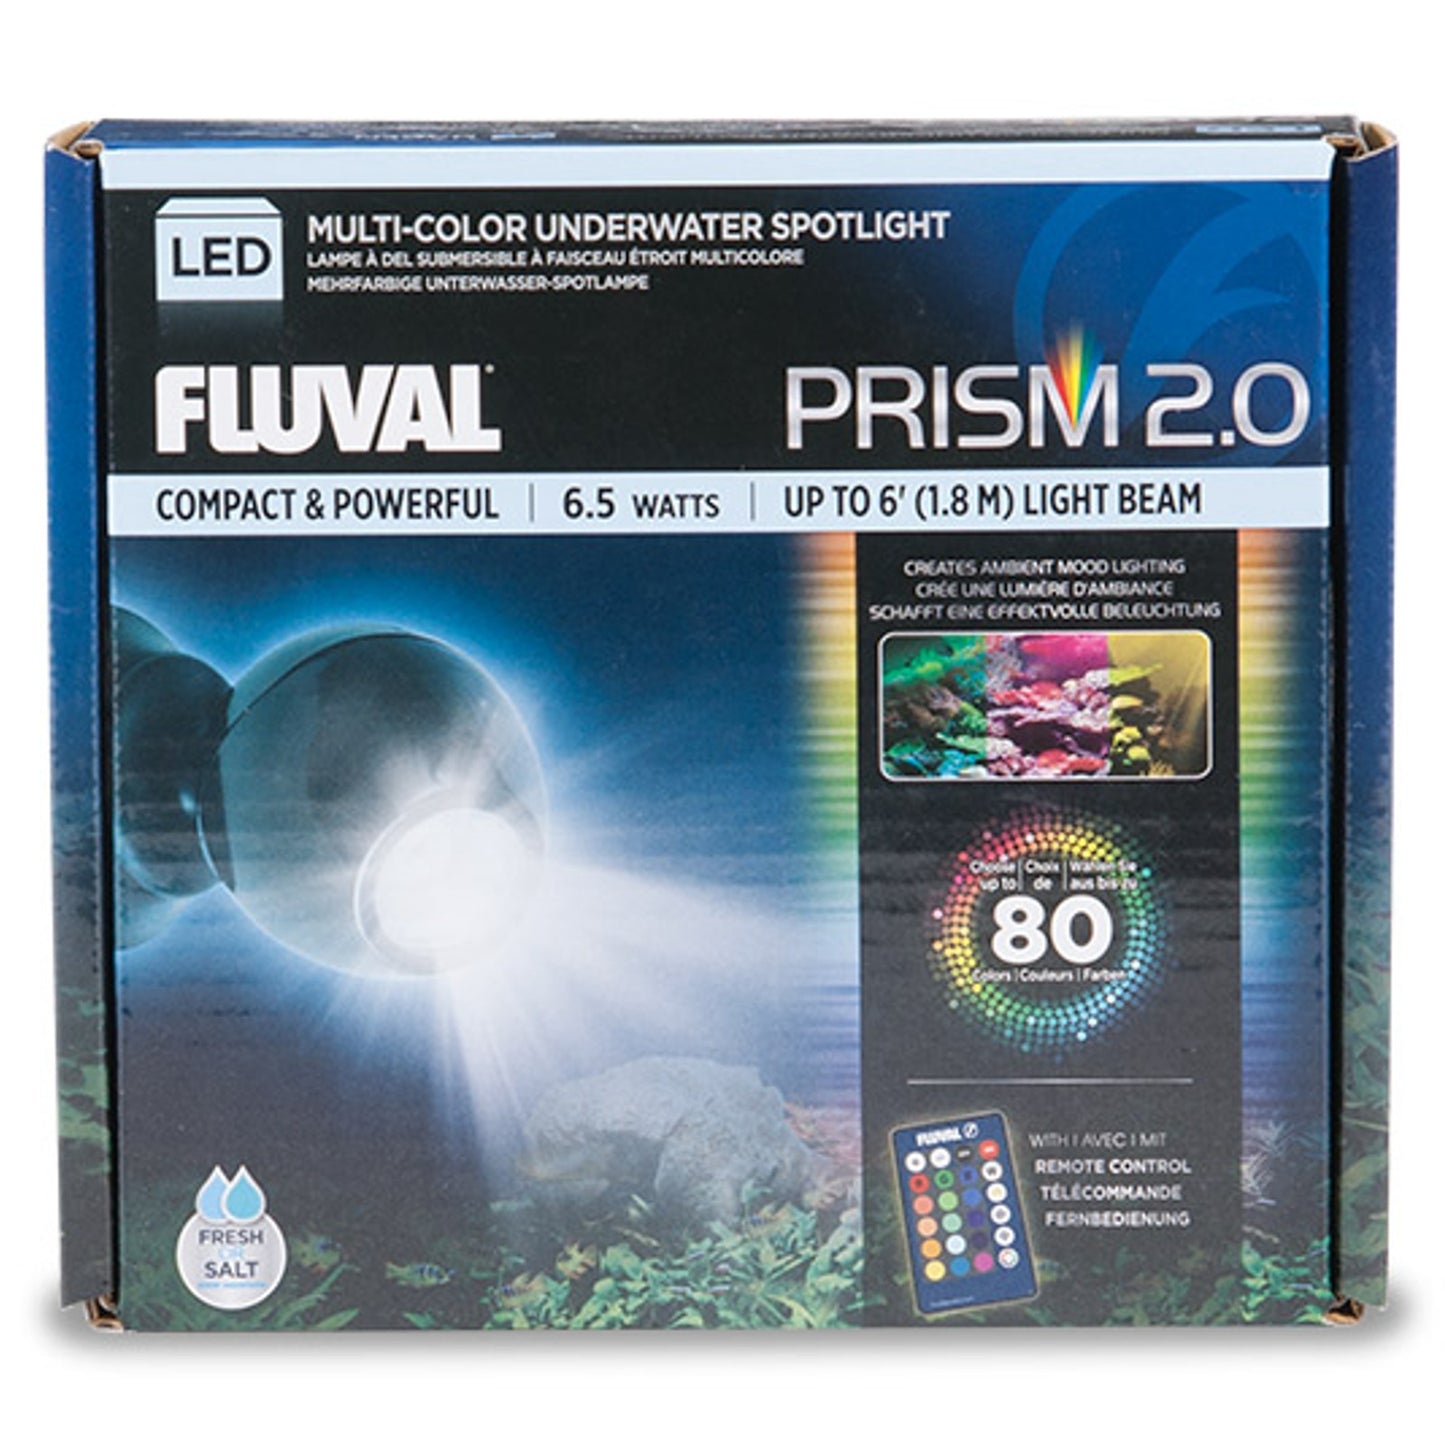 NEW Fluval Prism 2.0 Spotlight LED